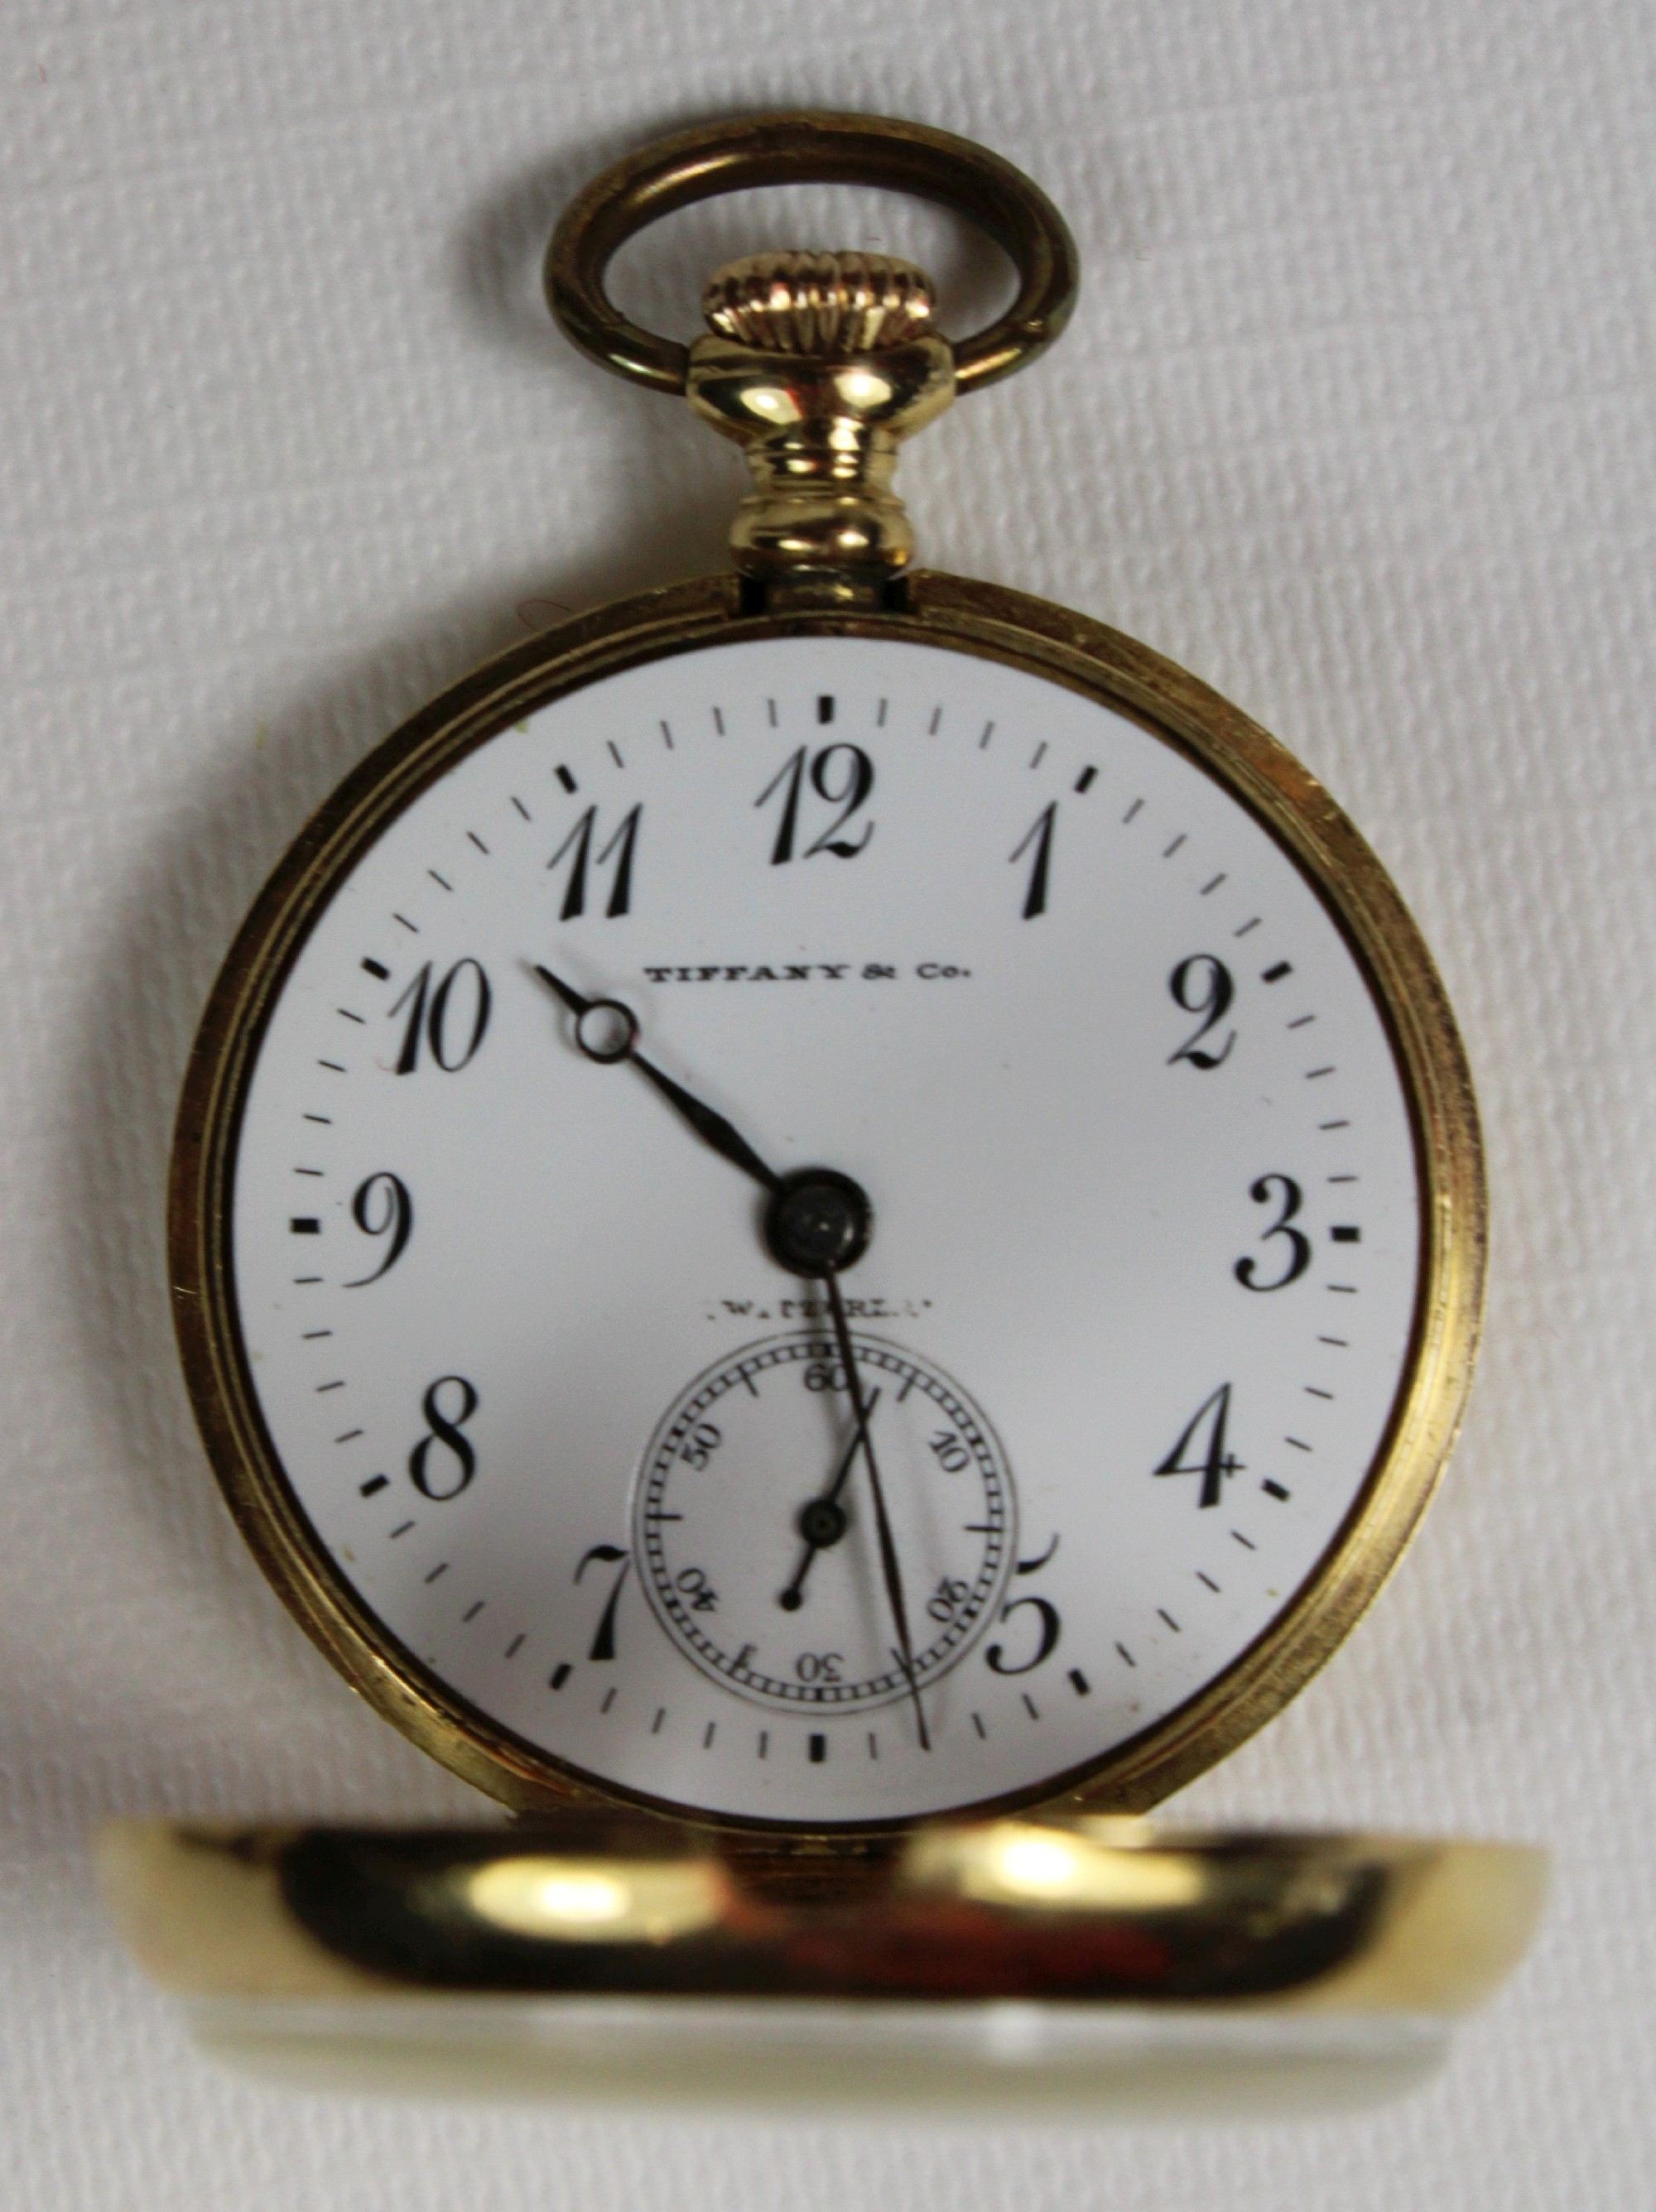 Tiffany Damentaschenuhr, 20 Jh., 750er Gold, Gewicht: 20,91 g. Guter Zustand, Uhr läuft. - Image 2 of 3